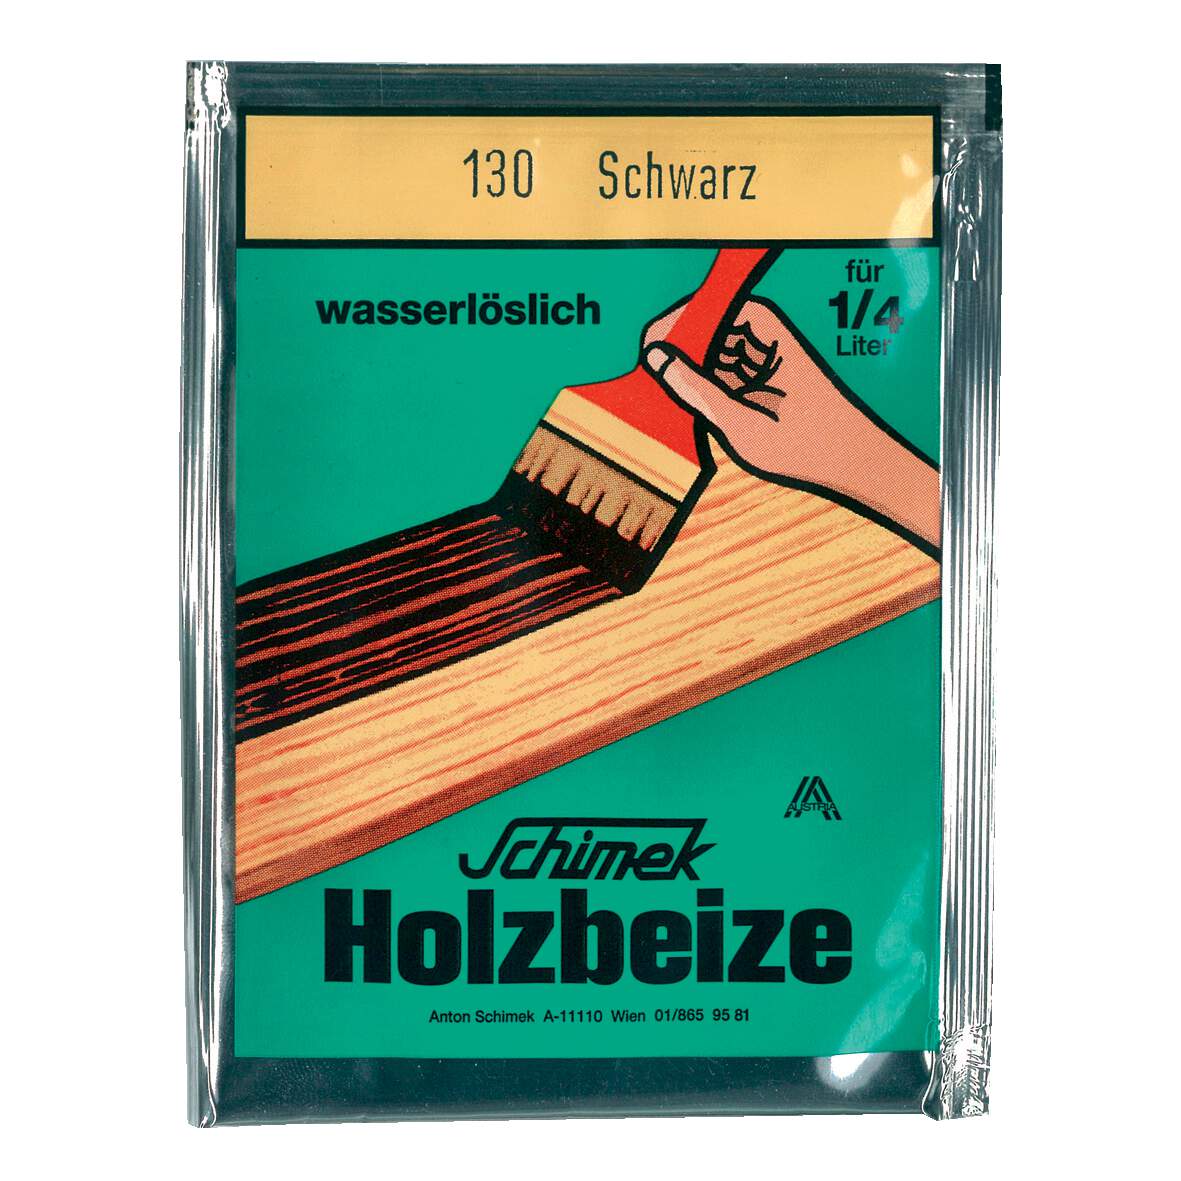 1216636 - Holzbeize Feuerrot Nr.116 wasserlöslich